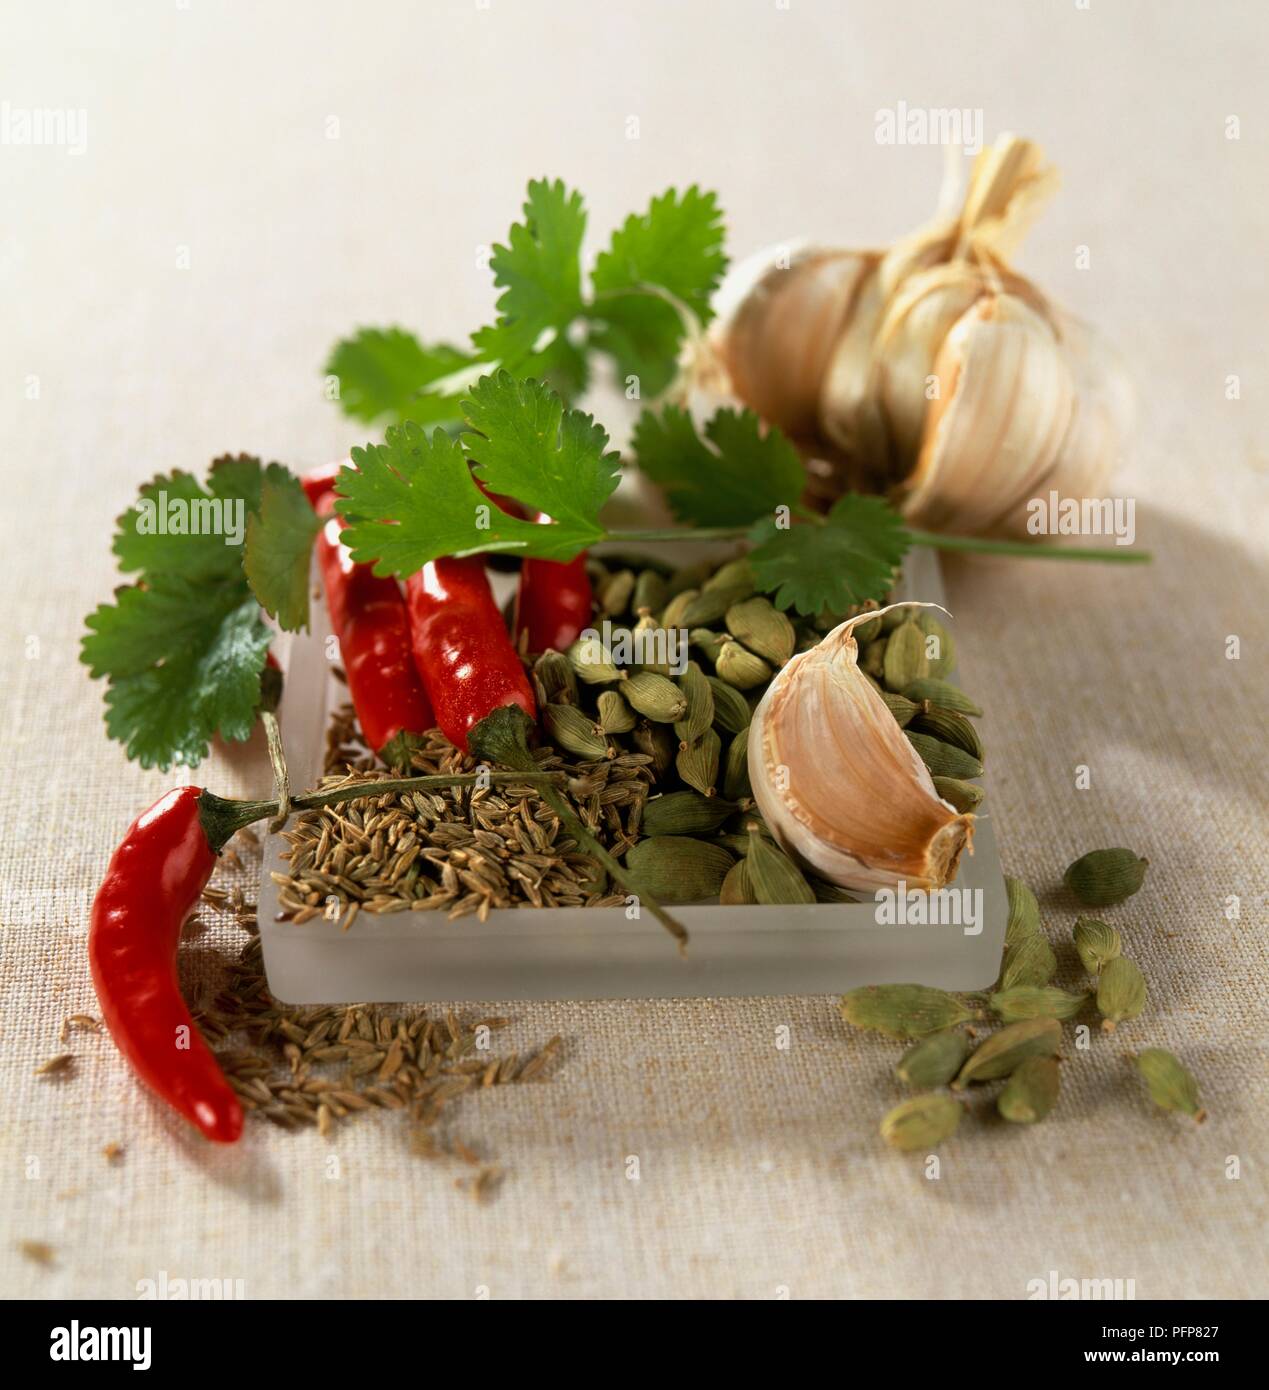 Zutat Jemenitischen zhug einfügen, Korianderblätter, Knoblauchzehen, rote Chilis, Kreuzkümmel, Kardamom Samen Stockfoto